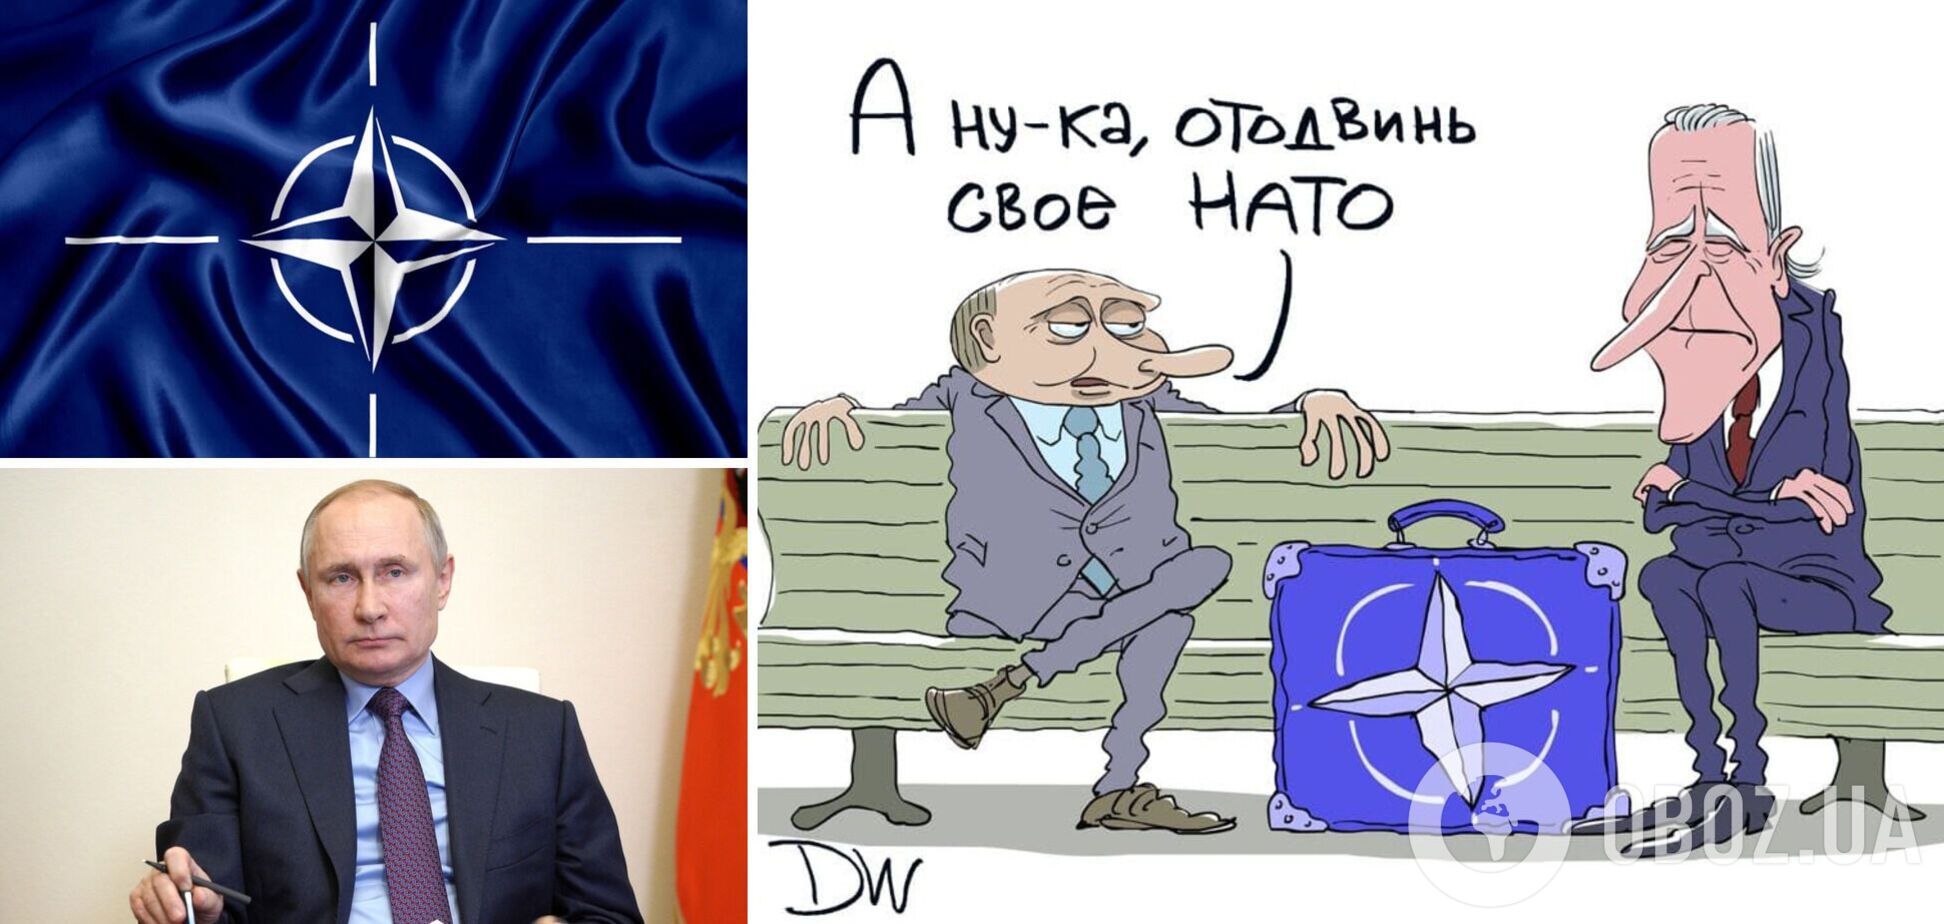 Российские 'гарантии безопасности' высмеяли карикатурой